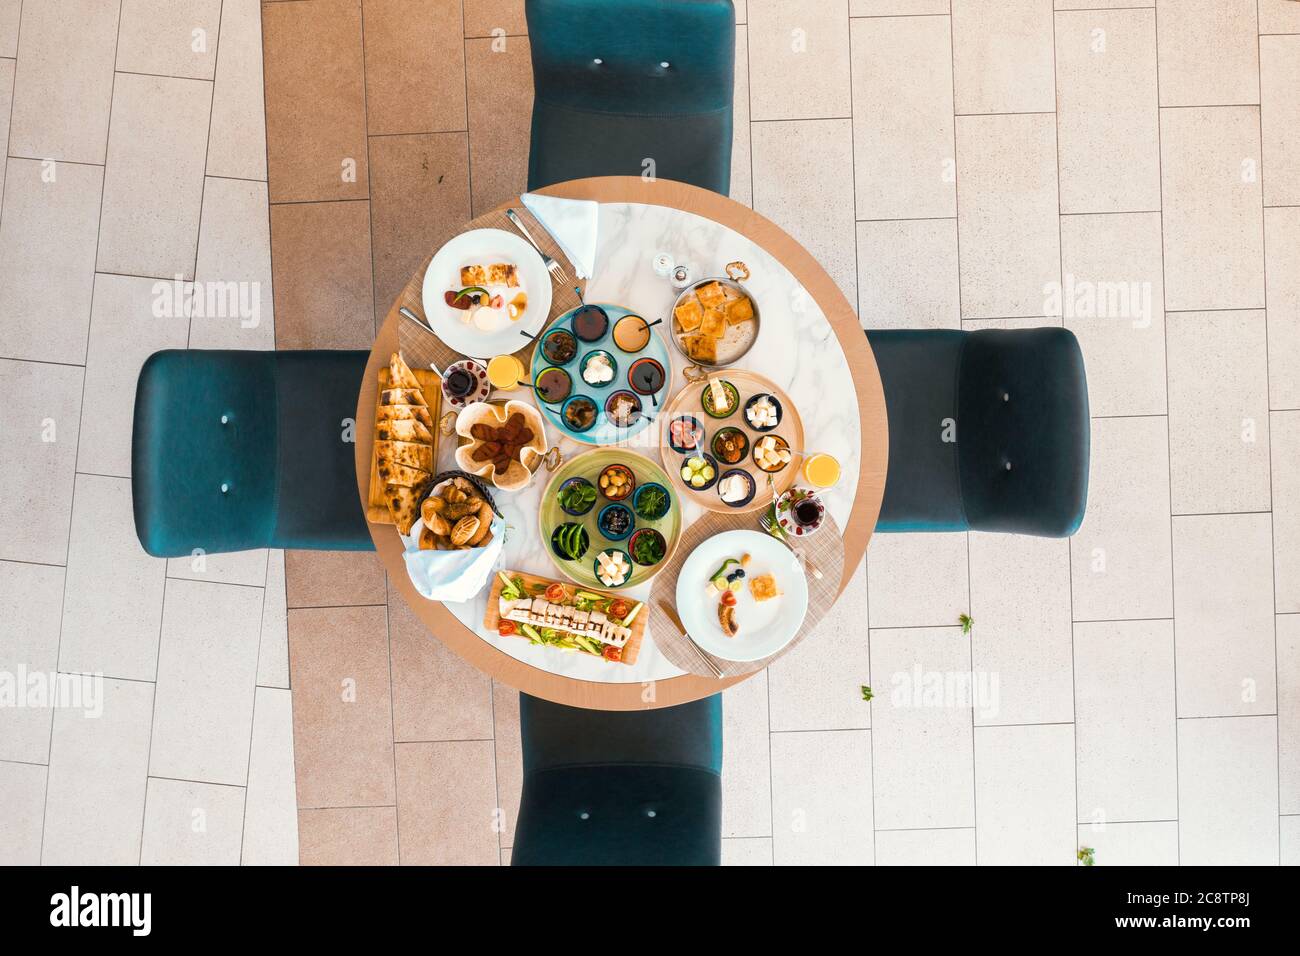 Blick von oben auf leckeres Essen mit verschiedenen Zutaten auf dem runden Tisch, in einem Restaurant oder Hotel. Hochwertige Fotos Stockfoto